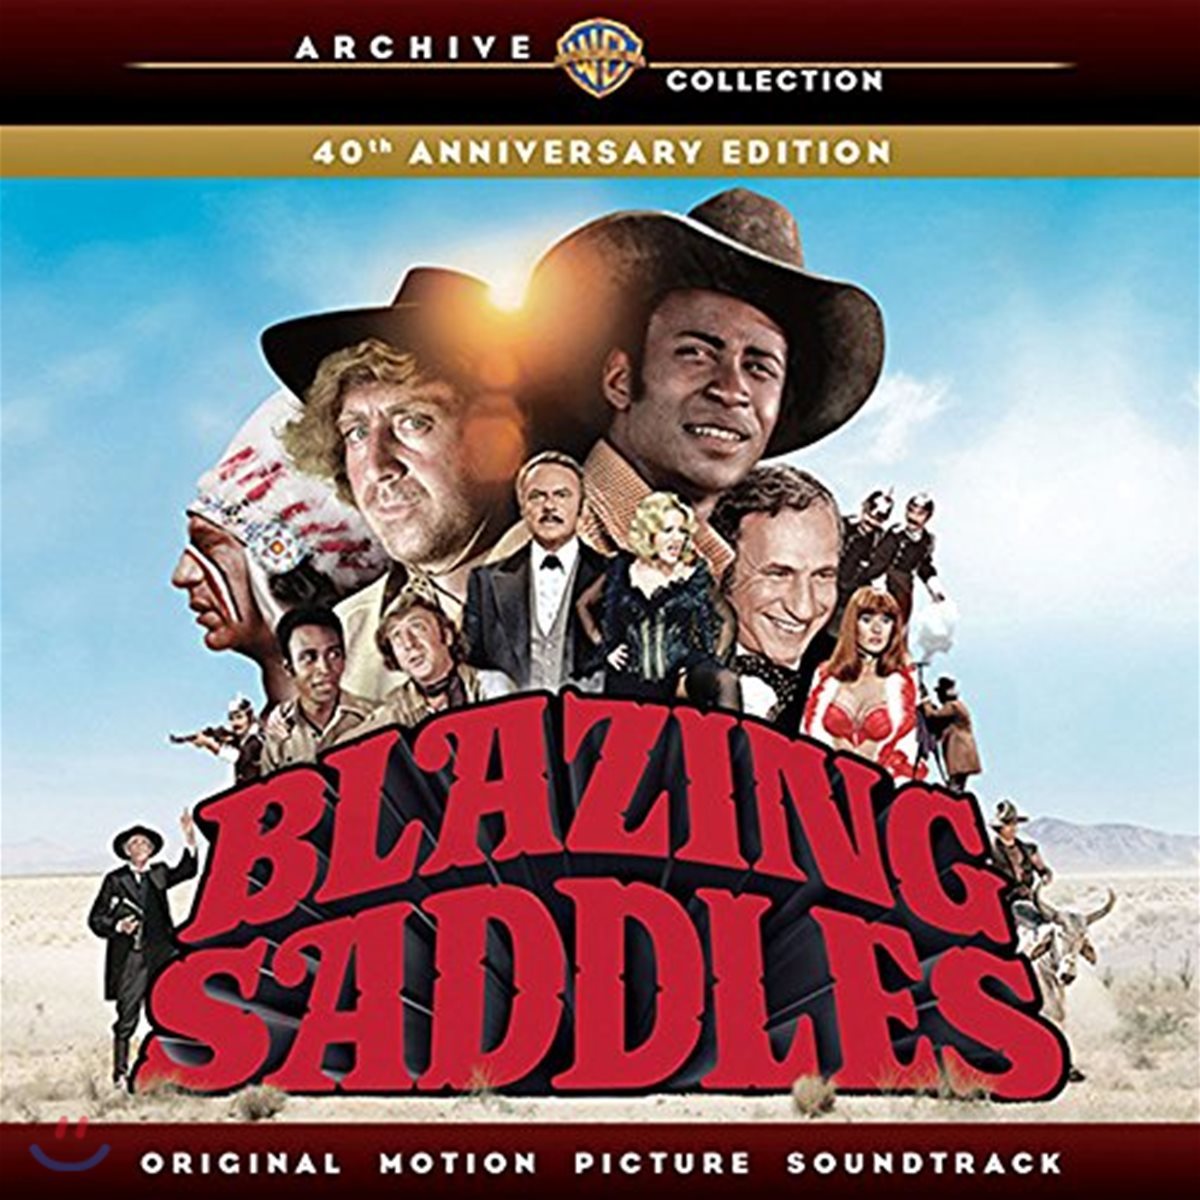 블레이징 새들스 영화음악 (Blazing Saddles OST)